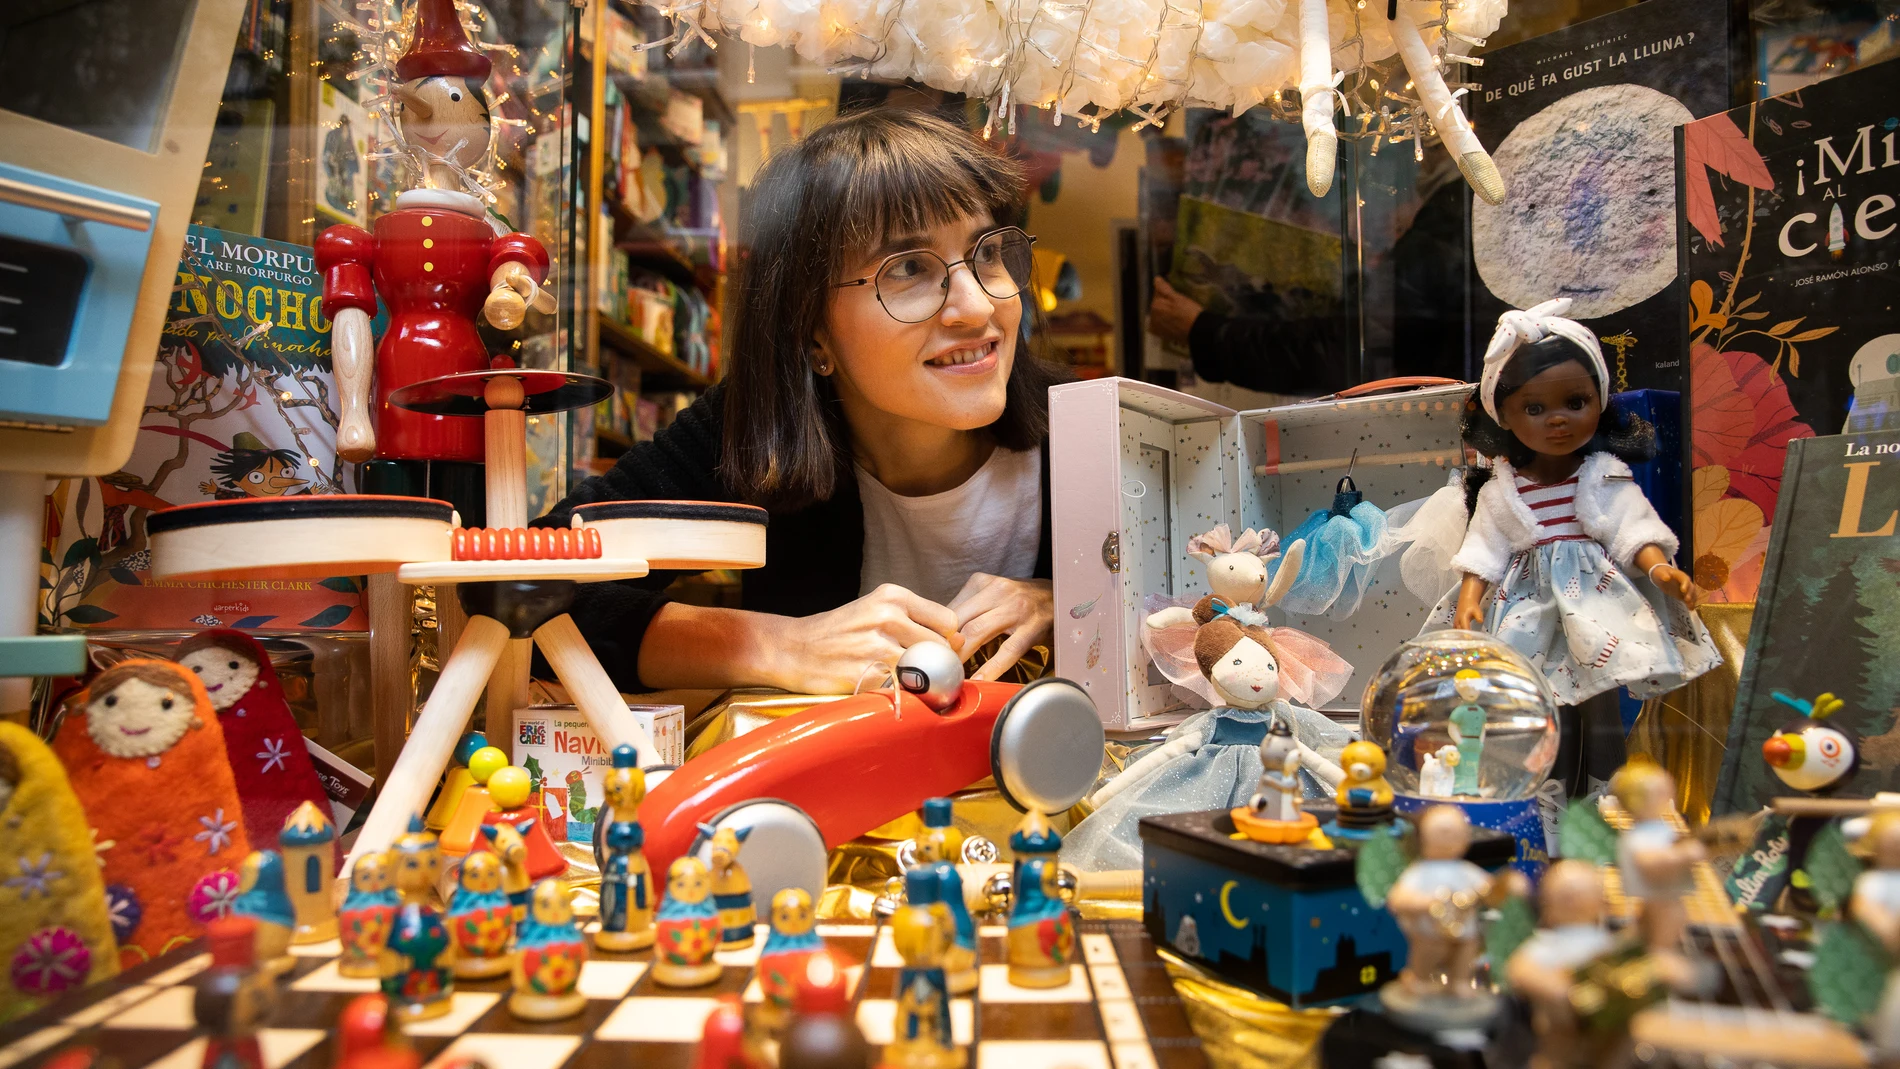 Eugenia Pujol, de 35 años, en su juguetería "Fabre" de Barcelona